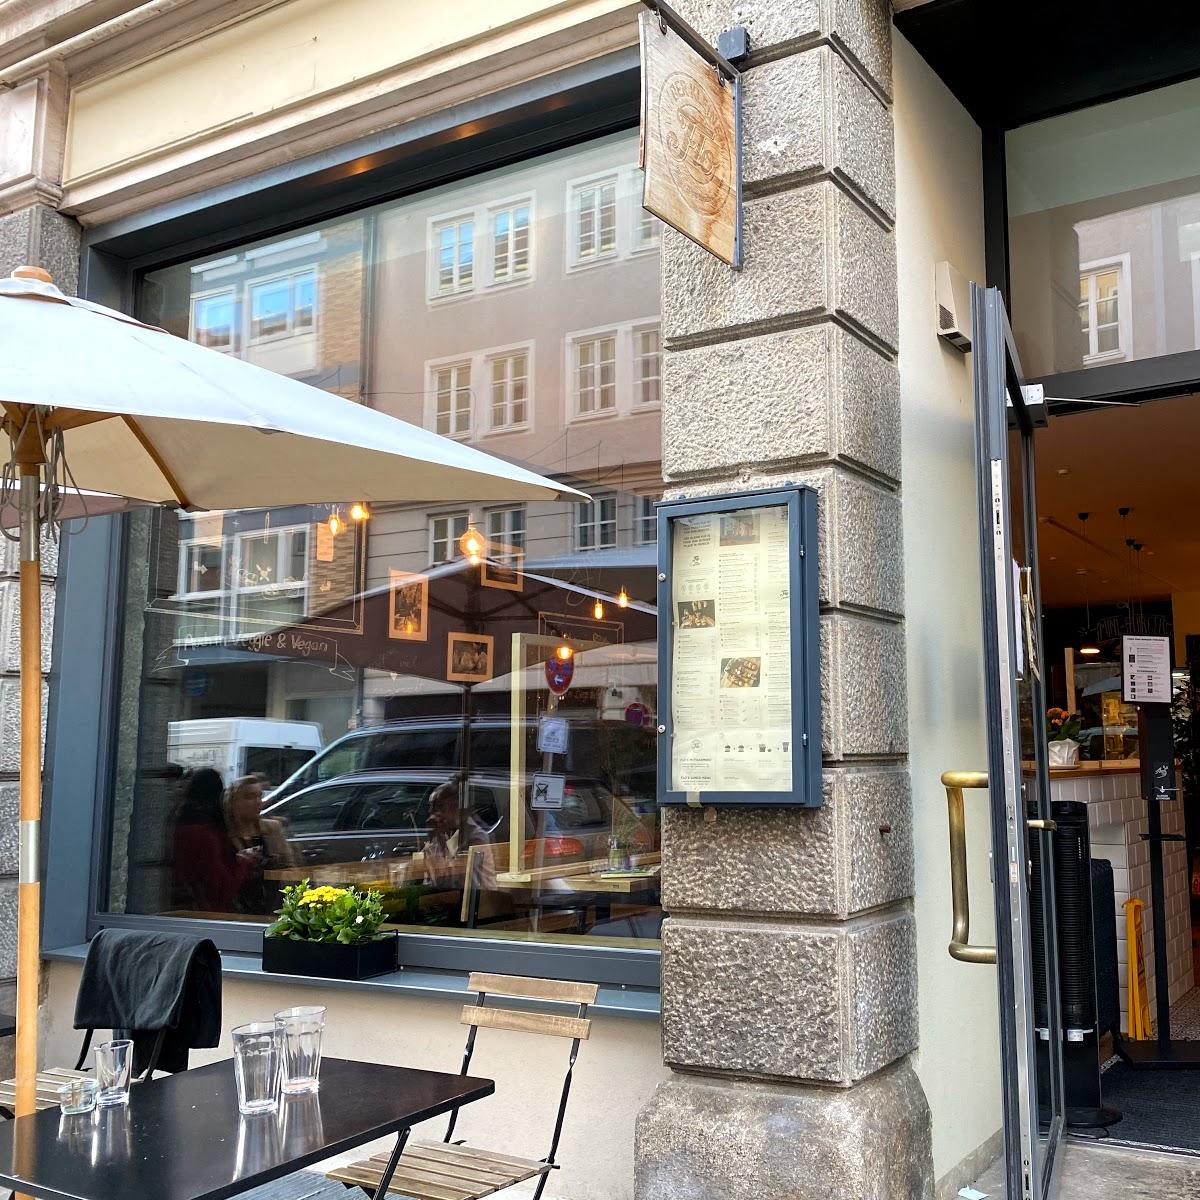 Restaurant "Der kleine Flo" in München